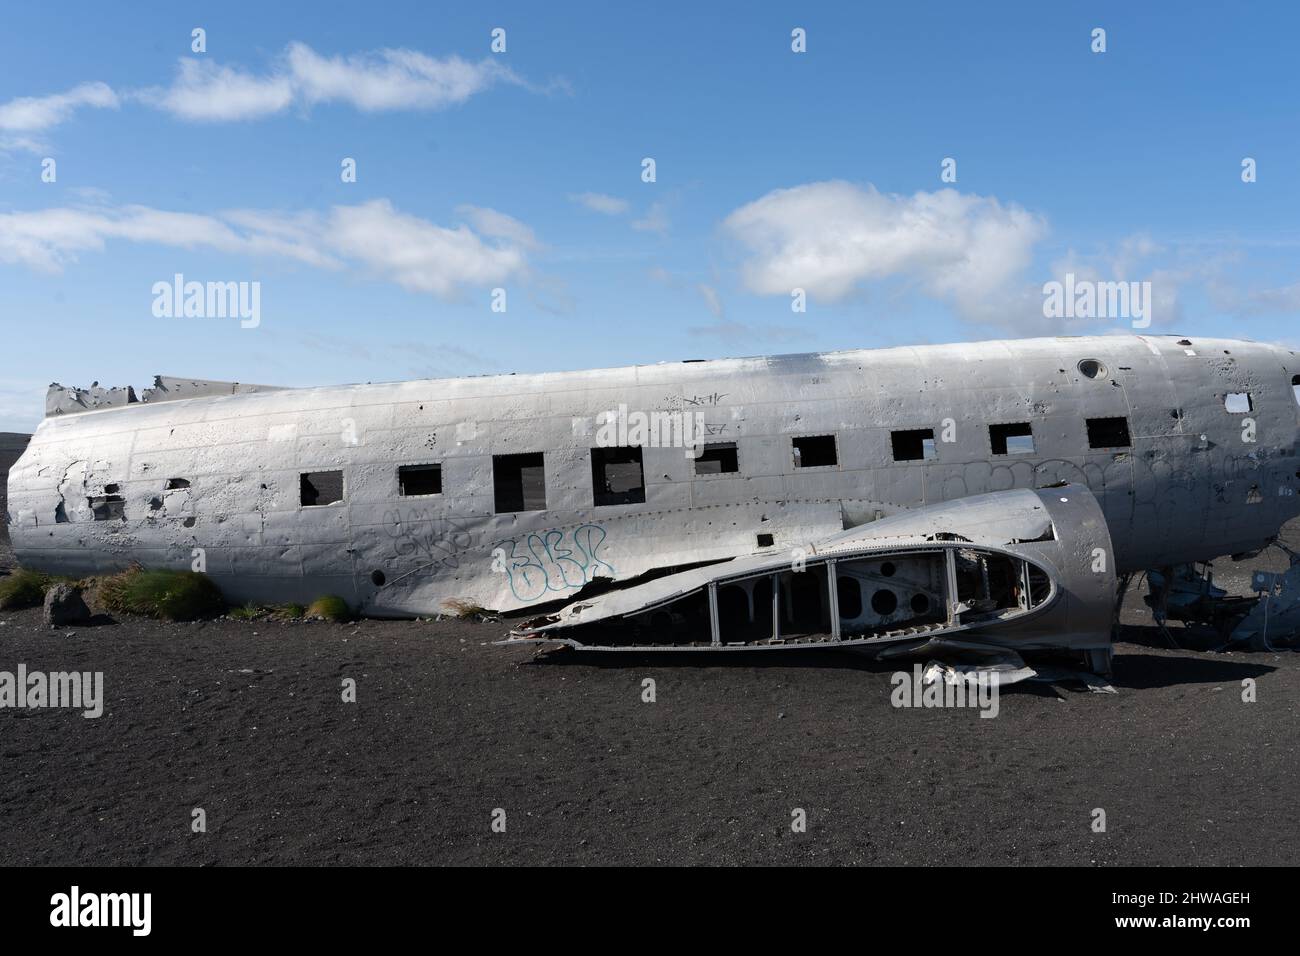 Vue impressionnante de l'épave de l'avion de Sólheimasandur, les restes d'un avion de 1973 U.S. Navy DC qui s'est écrasé sur la plage de sable noir en Islande Banque D'Images